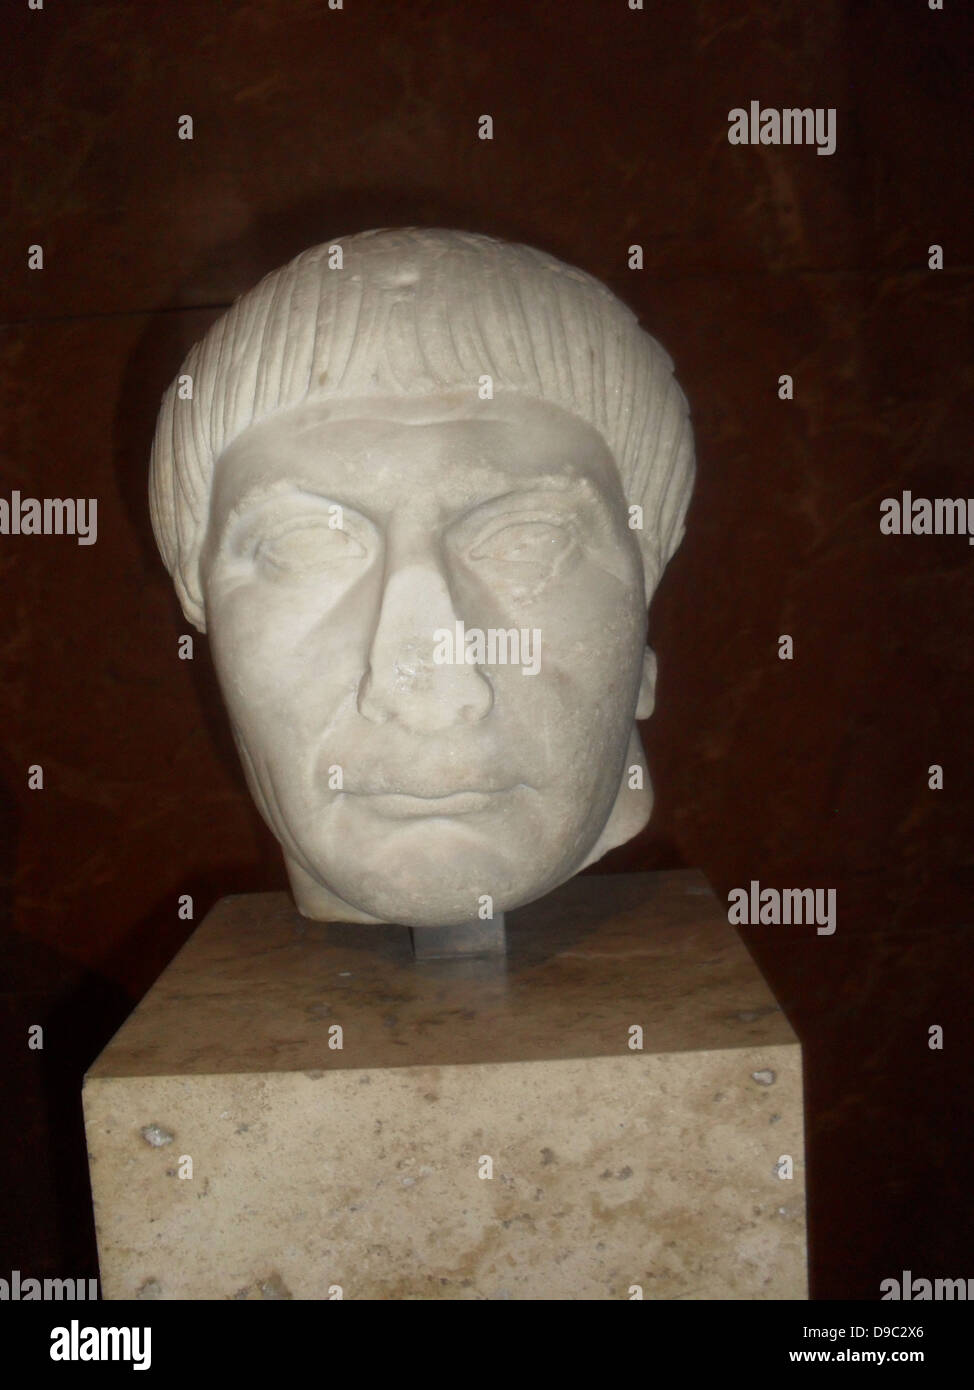 Traiano fu imperatore romano da 98 a 117. L'impero romano raggiunge la sua massima estensione territoriale sotto Traiano attraverso le sue conquiste in oriente Foto Stock